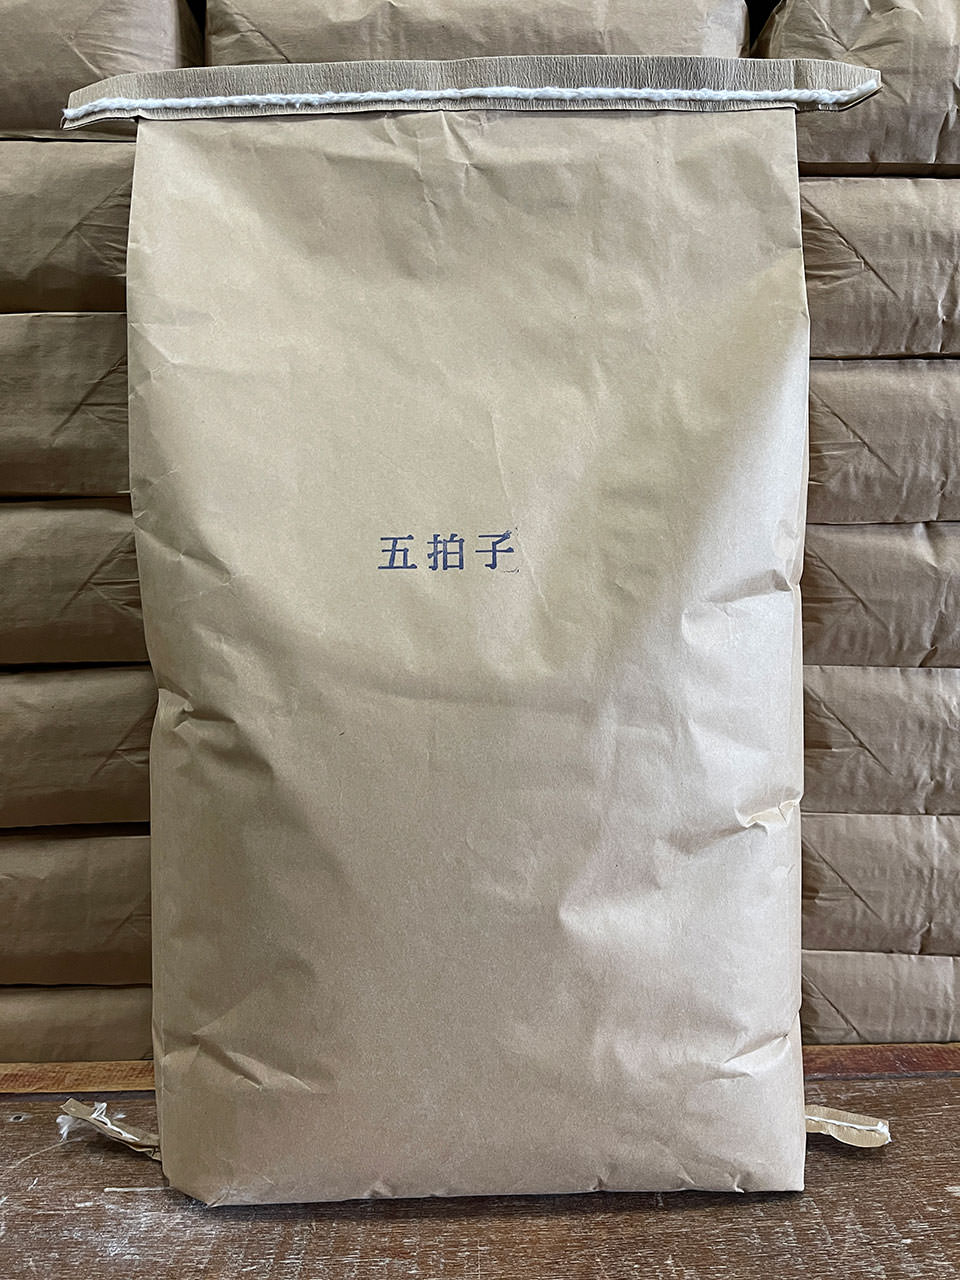 輸入原料石臼挽き蕎麦粉 – 宮本製粉株式会社